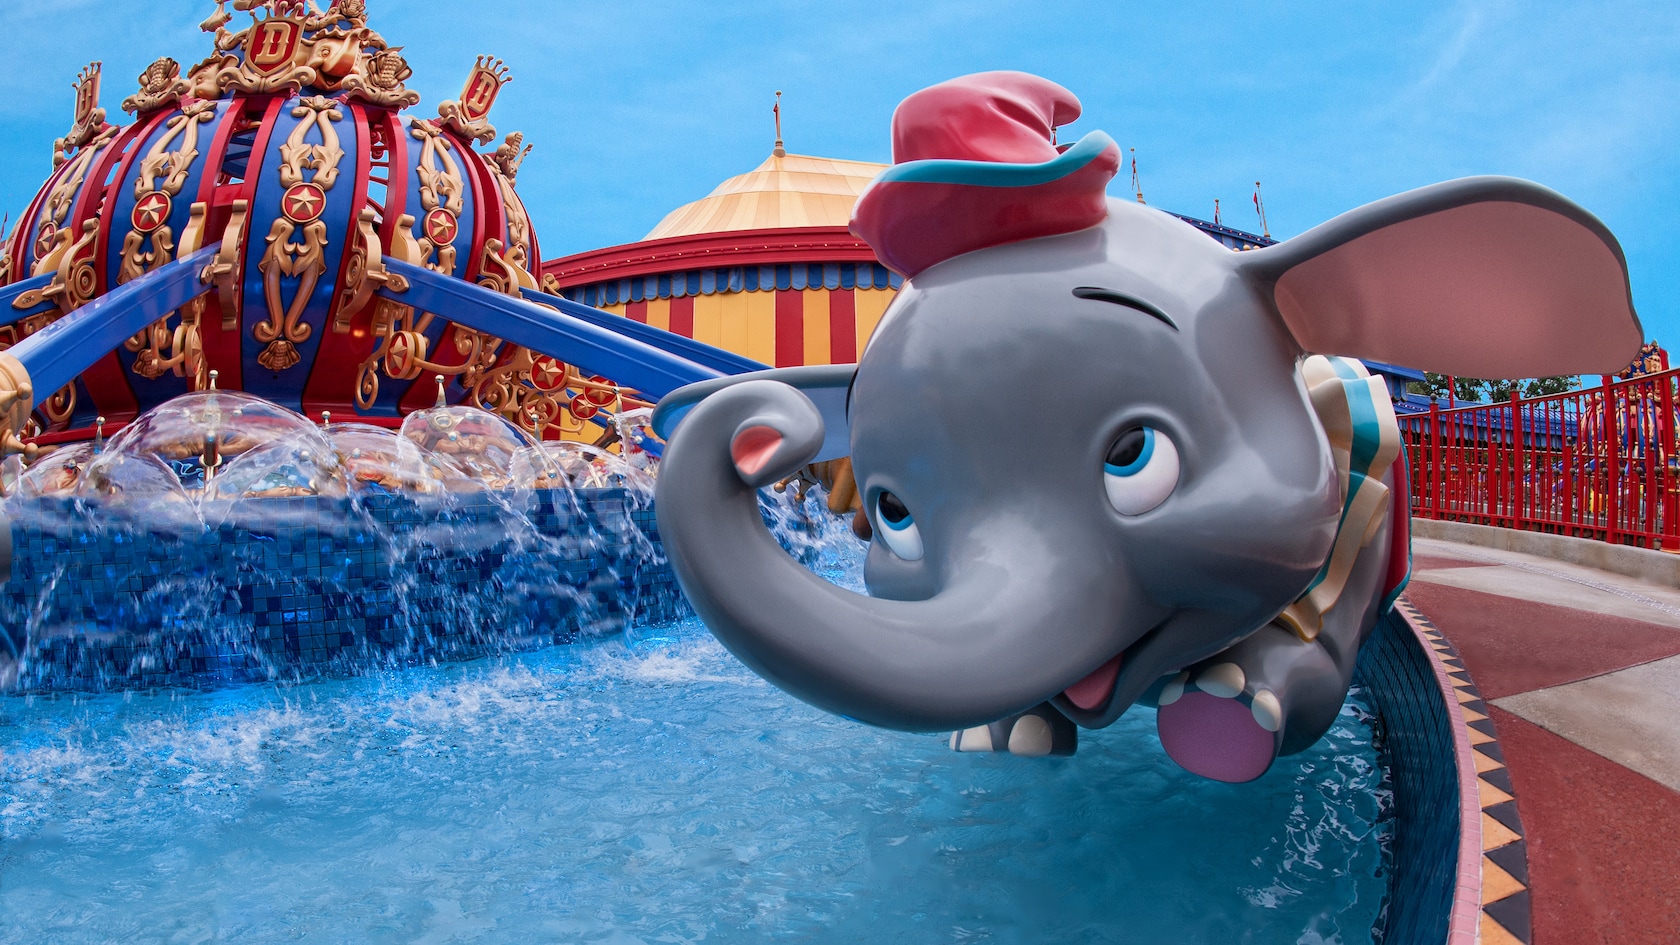 Dumbo The Flying Elephant | Walt Disney World Resort